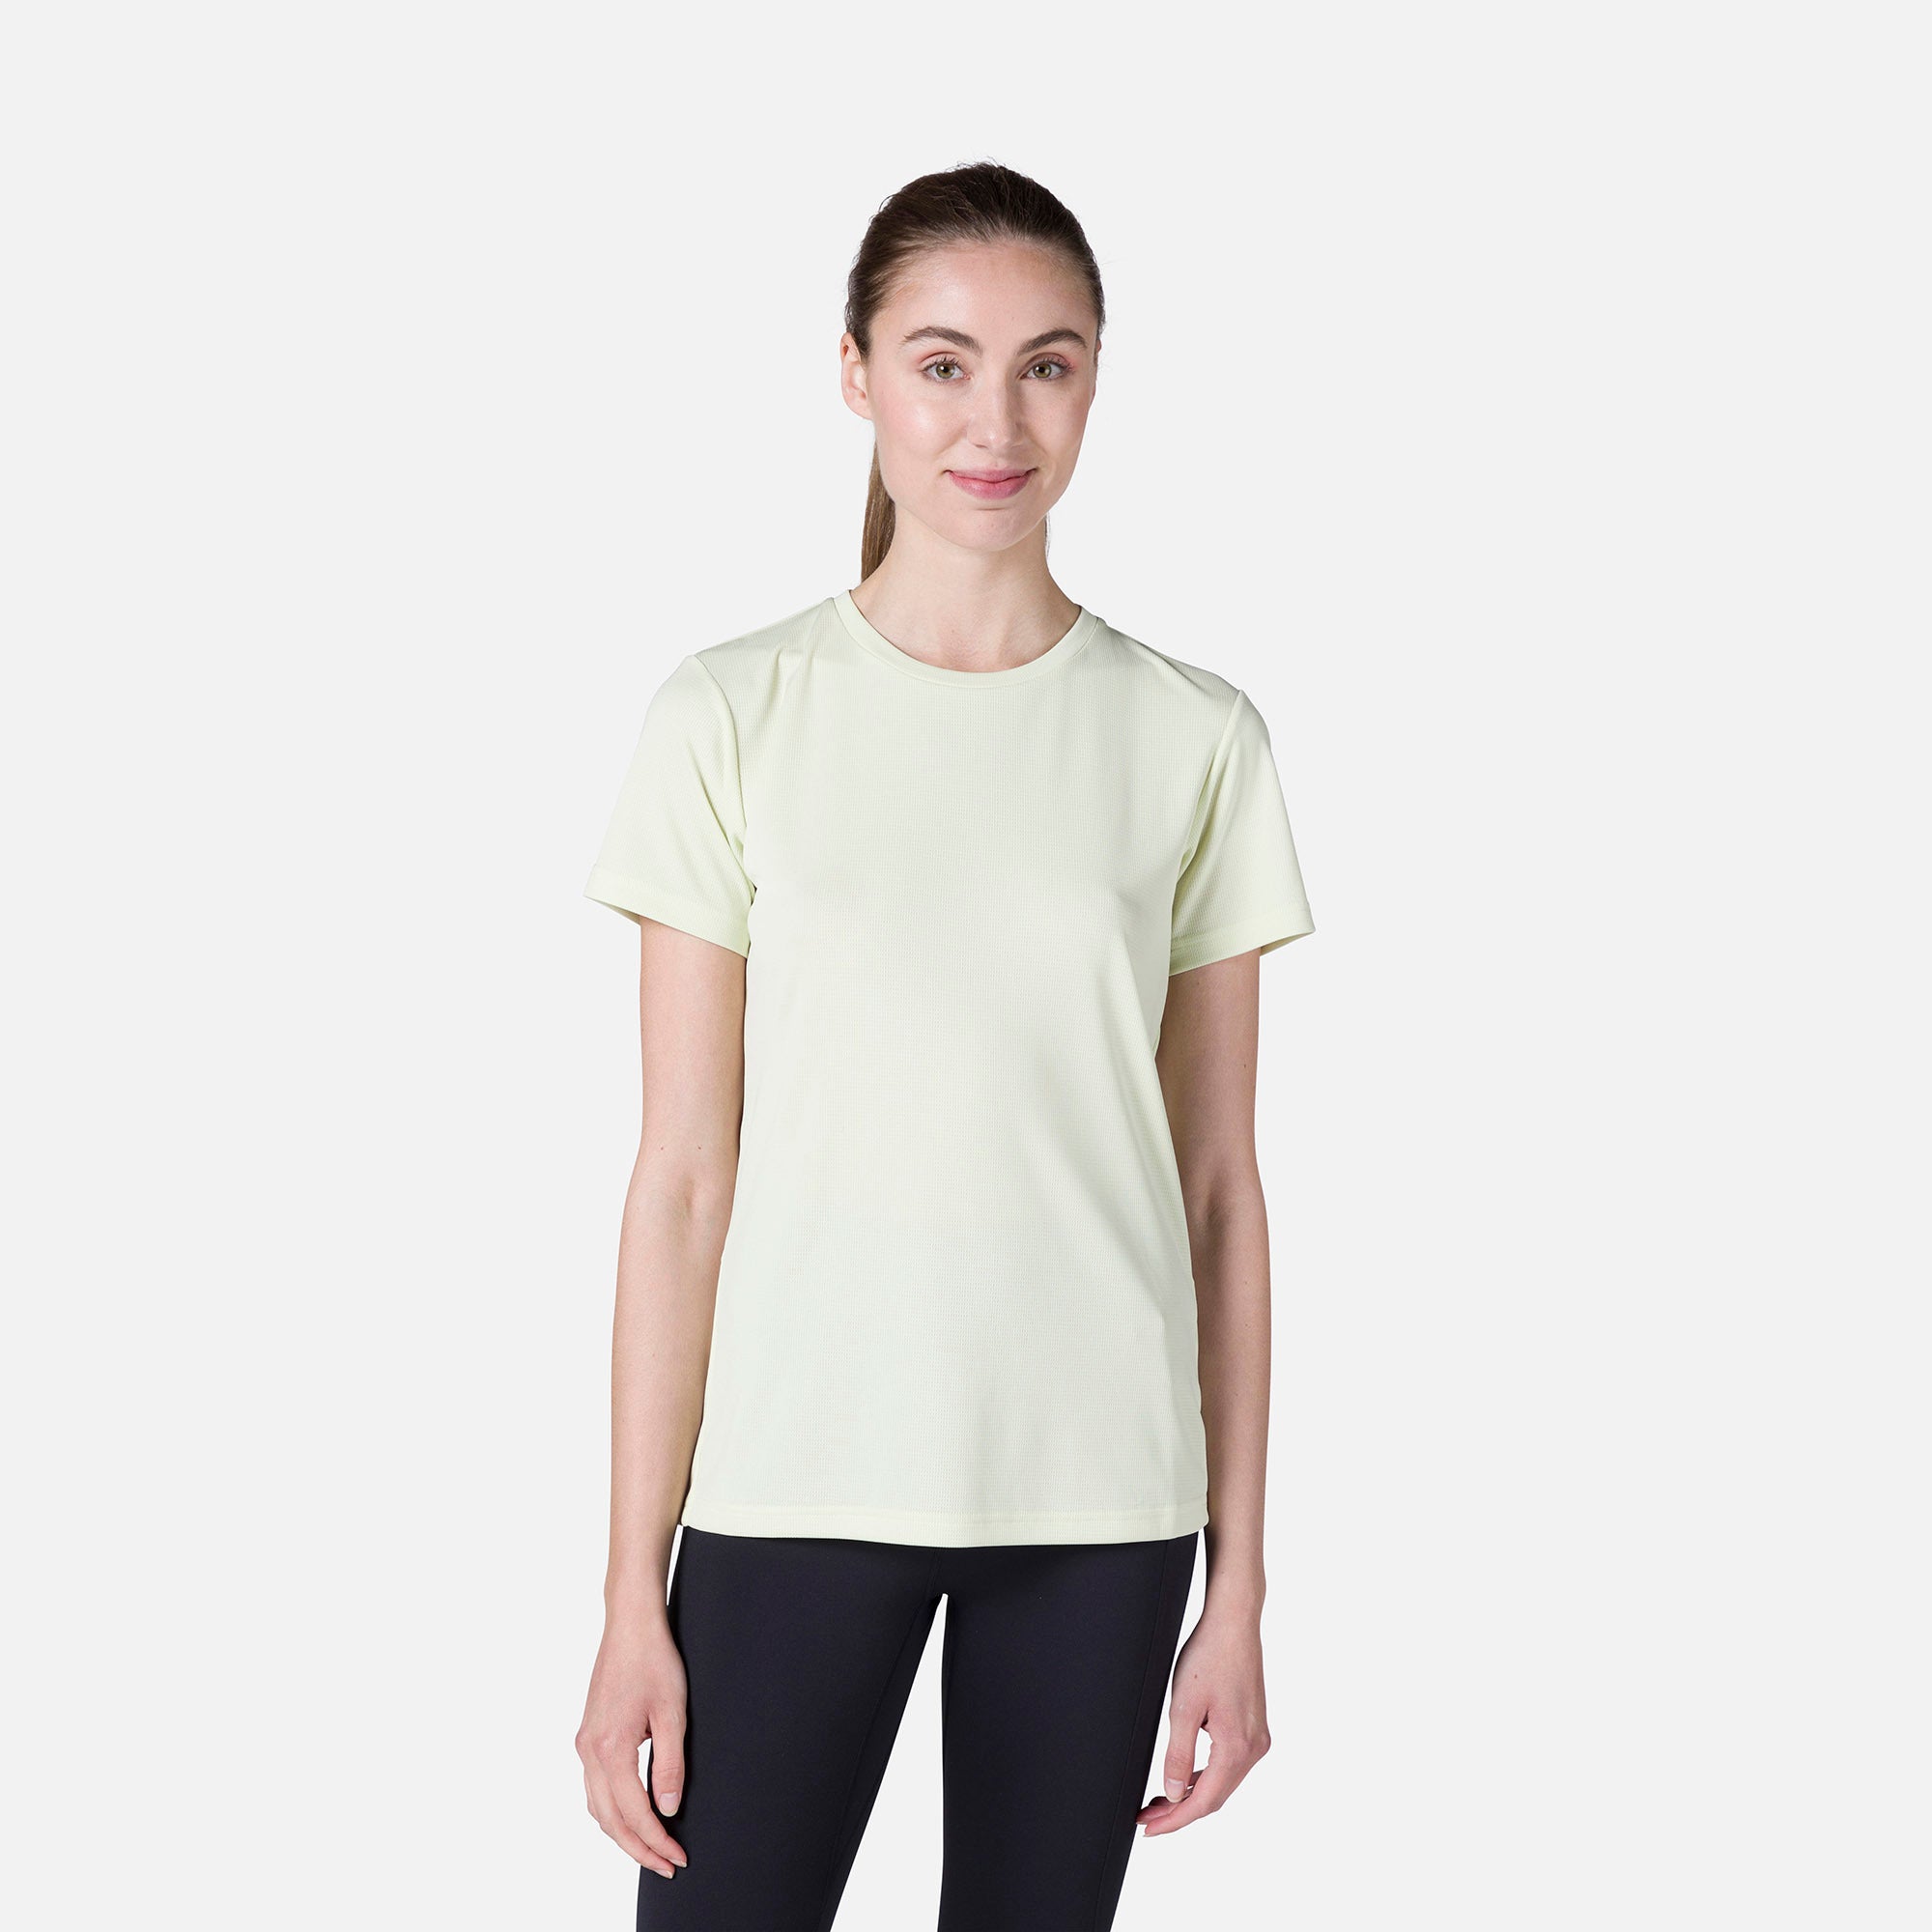 Women's Plain Hiking T-Shirt